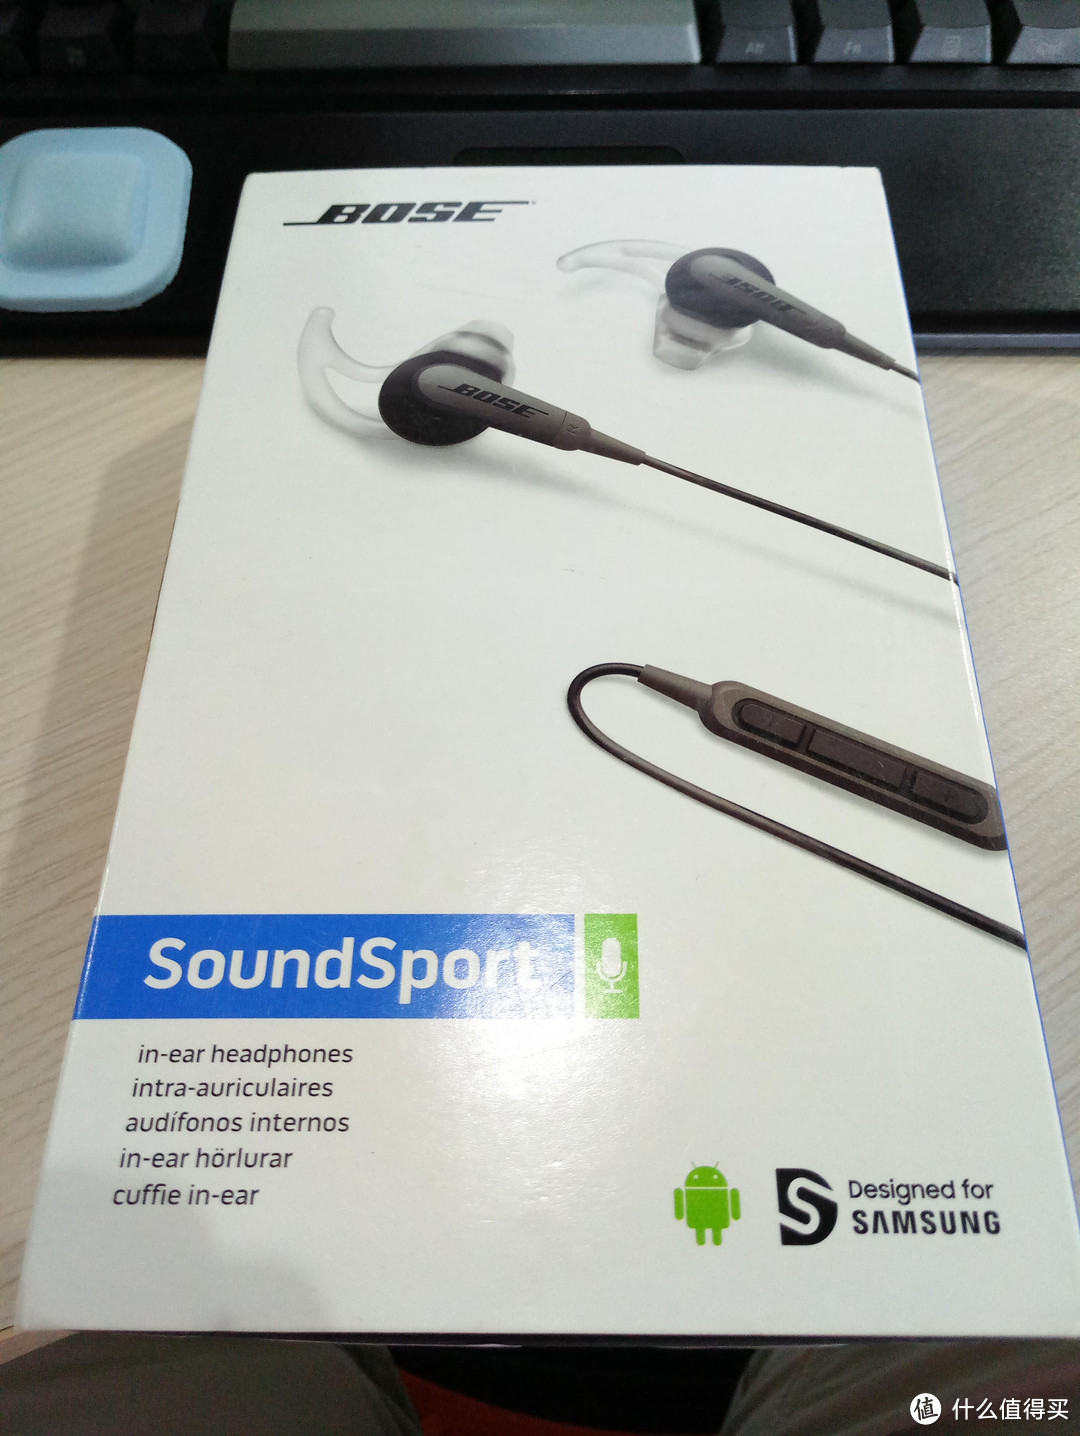 厚道的Z实惠 — Bose SoundSport AND黑色低价入手